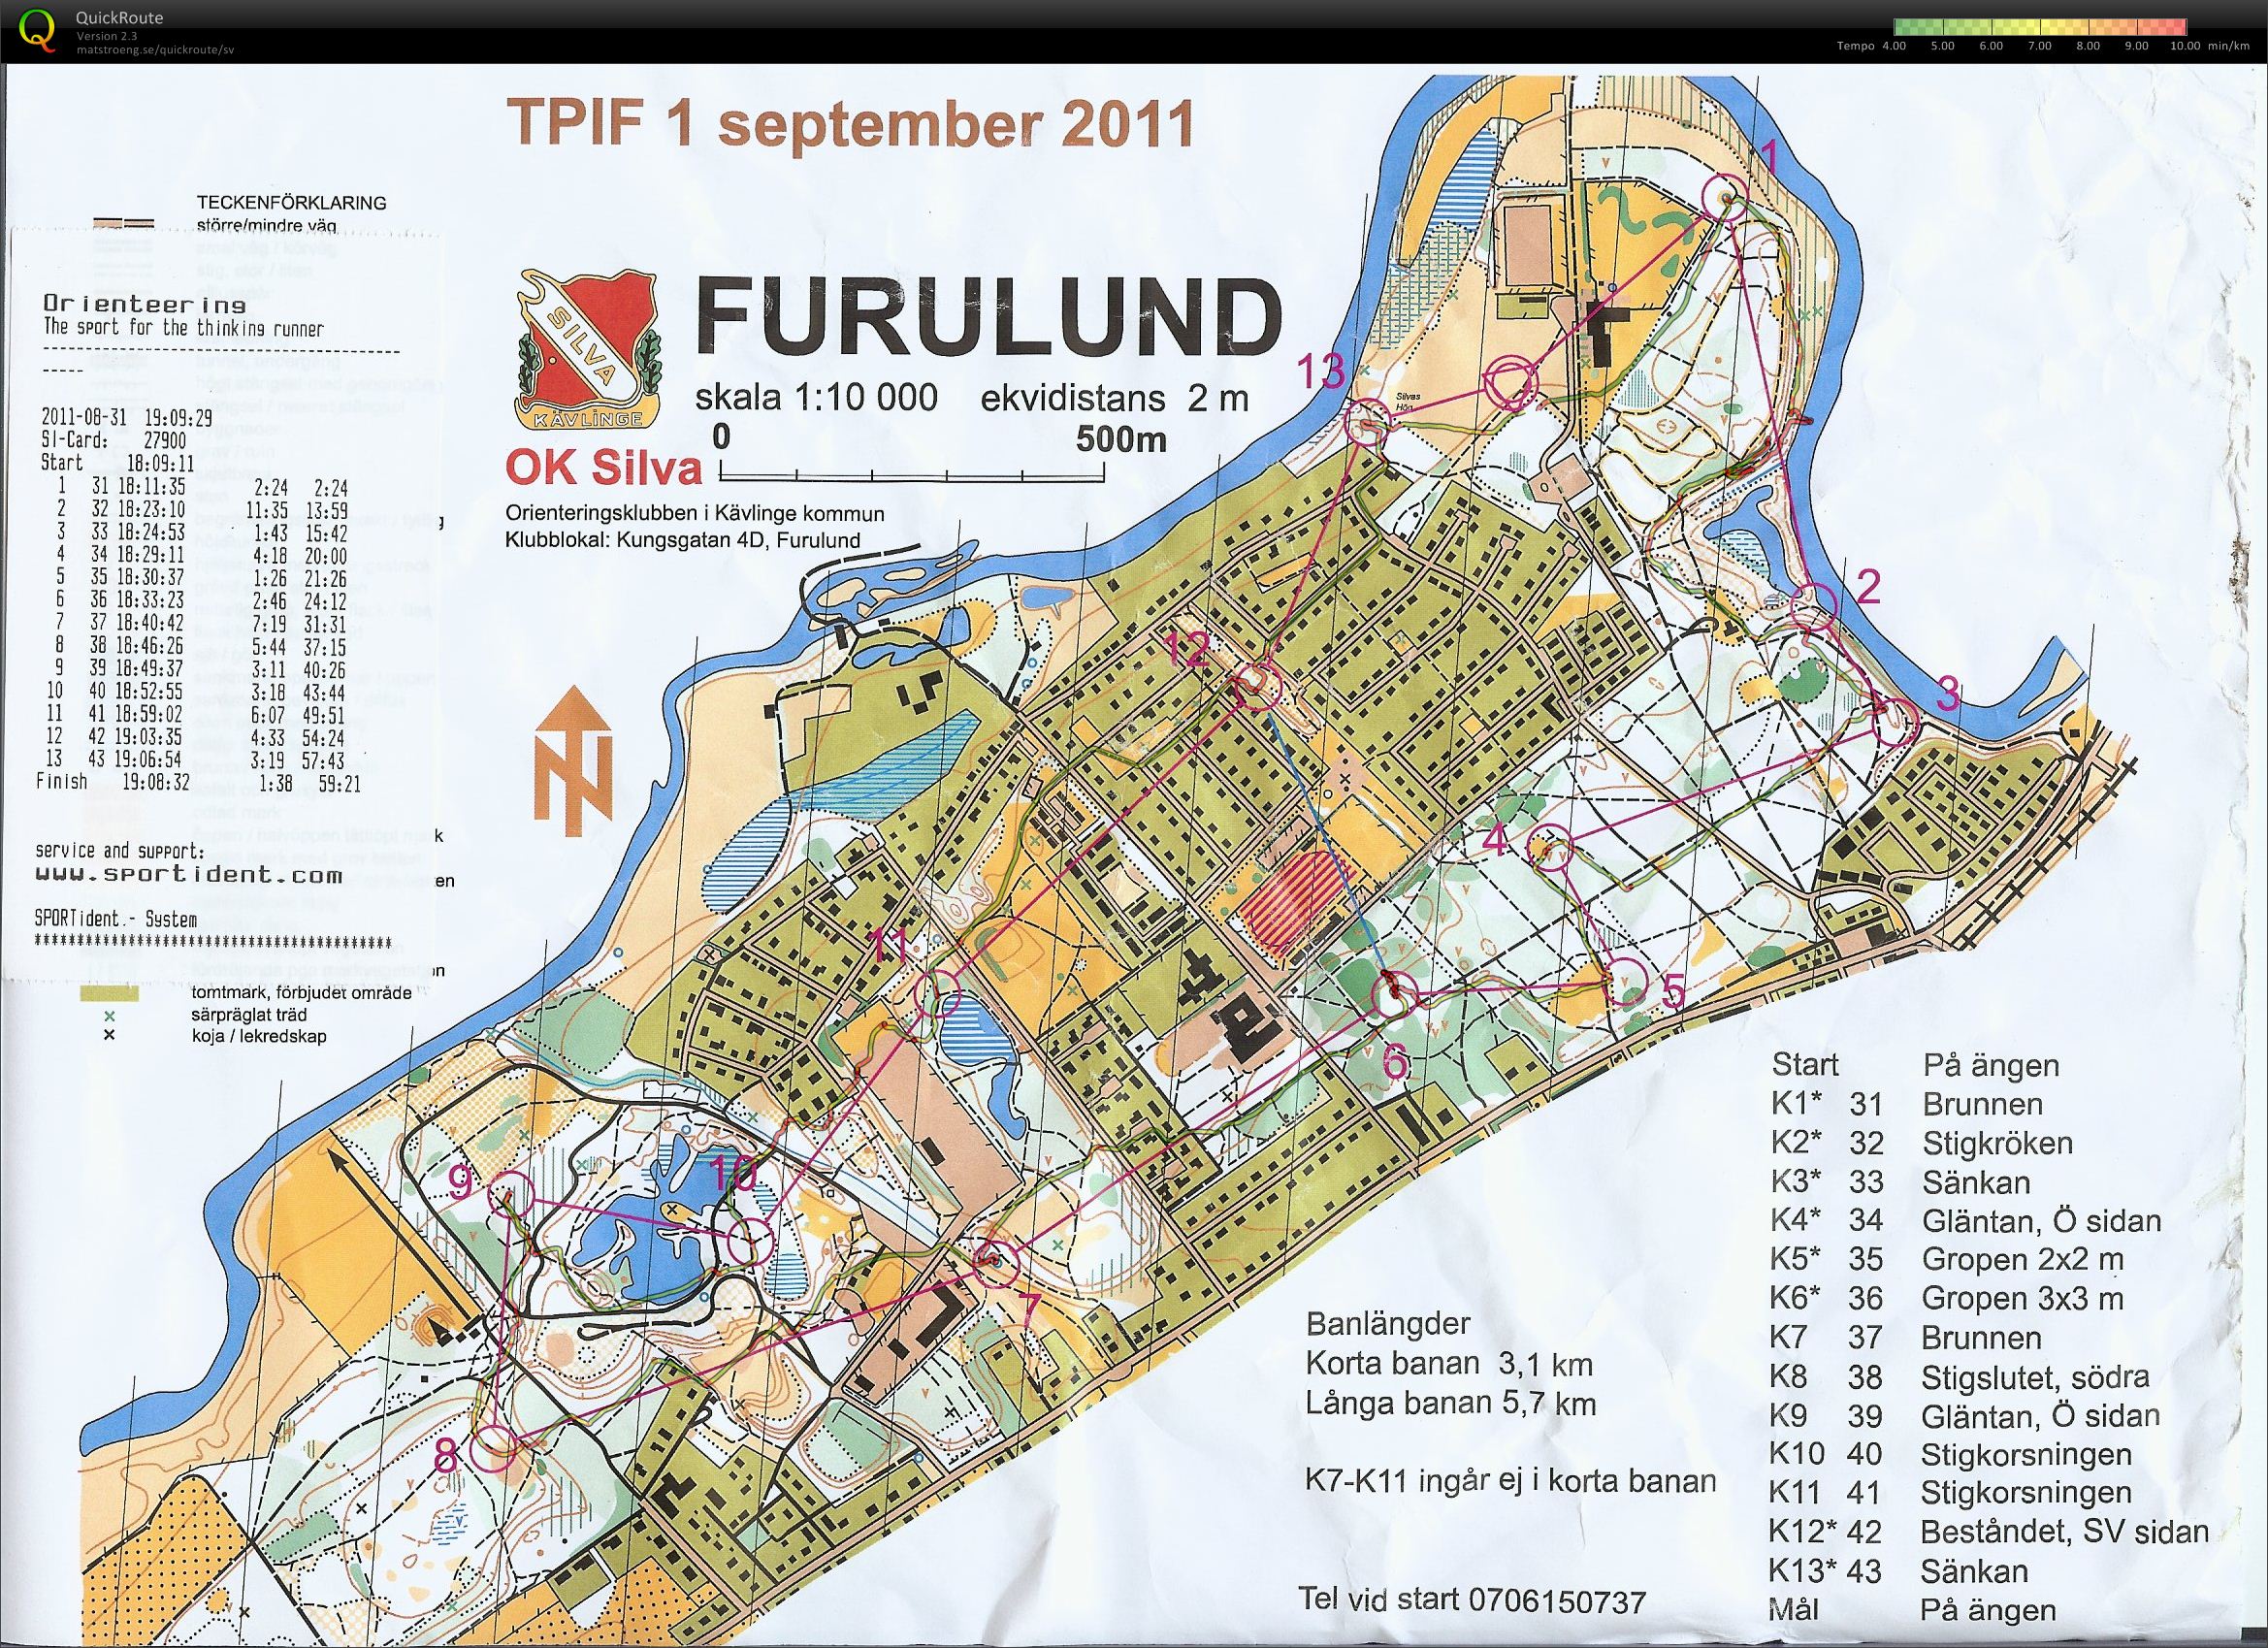 TPIF Furulund (31/08/2011)